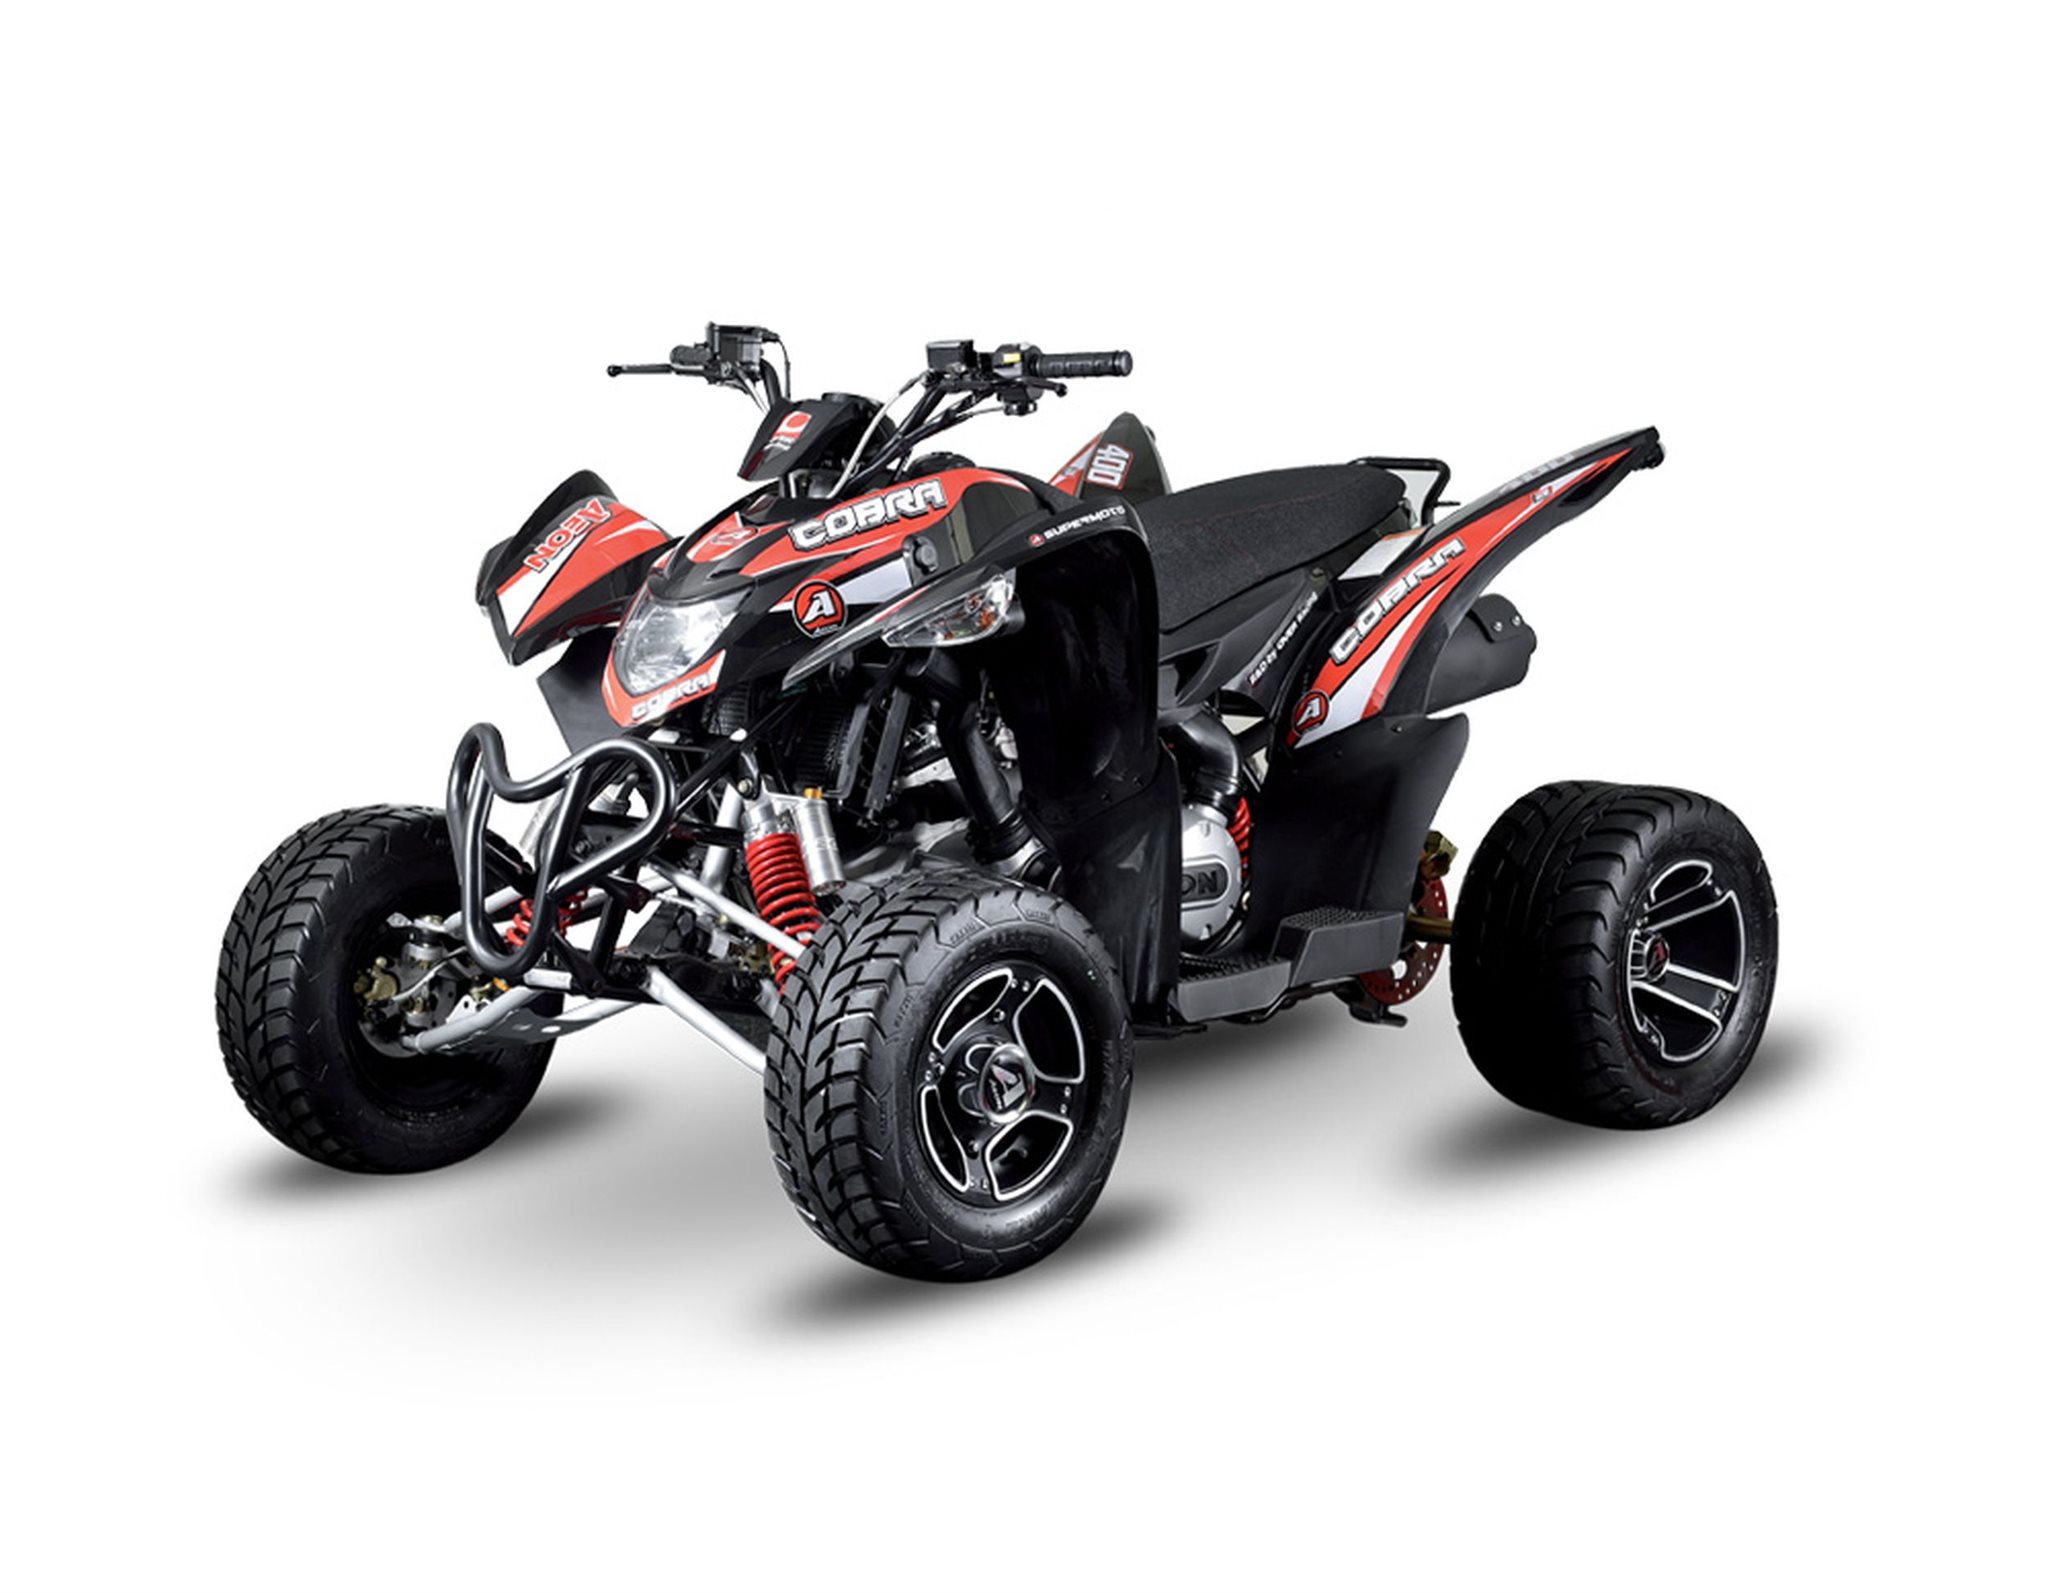 Gebrauchte und neue Aeon Cobra 400 Supermoto Motorräder kaufen